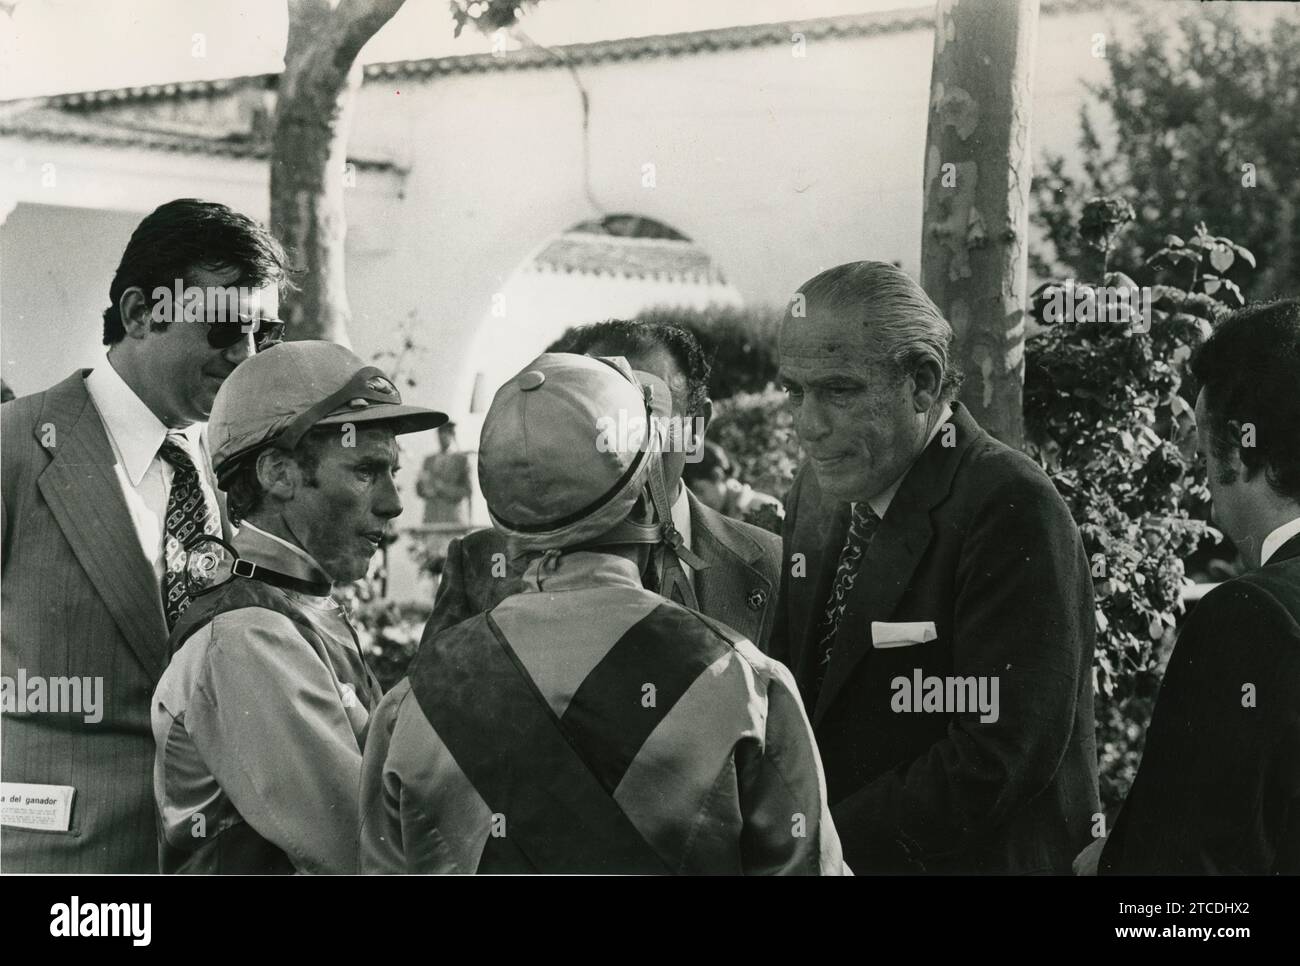 Madrid, 6/9/1975. Hippodrome de Zarzuela. Antonio Blasco, vainqueur du derby, s'entretient avec ses deux coureurs, dont Claudio Carudel, à gauche. Crédit : Album / Archivo ABC / Manuel Sanz Bermejo Banque D'Images